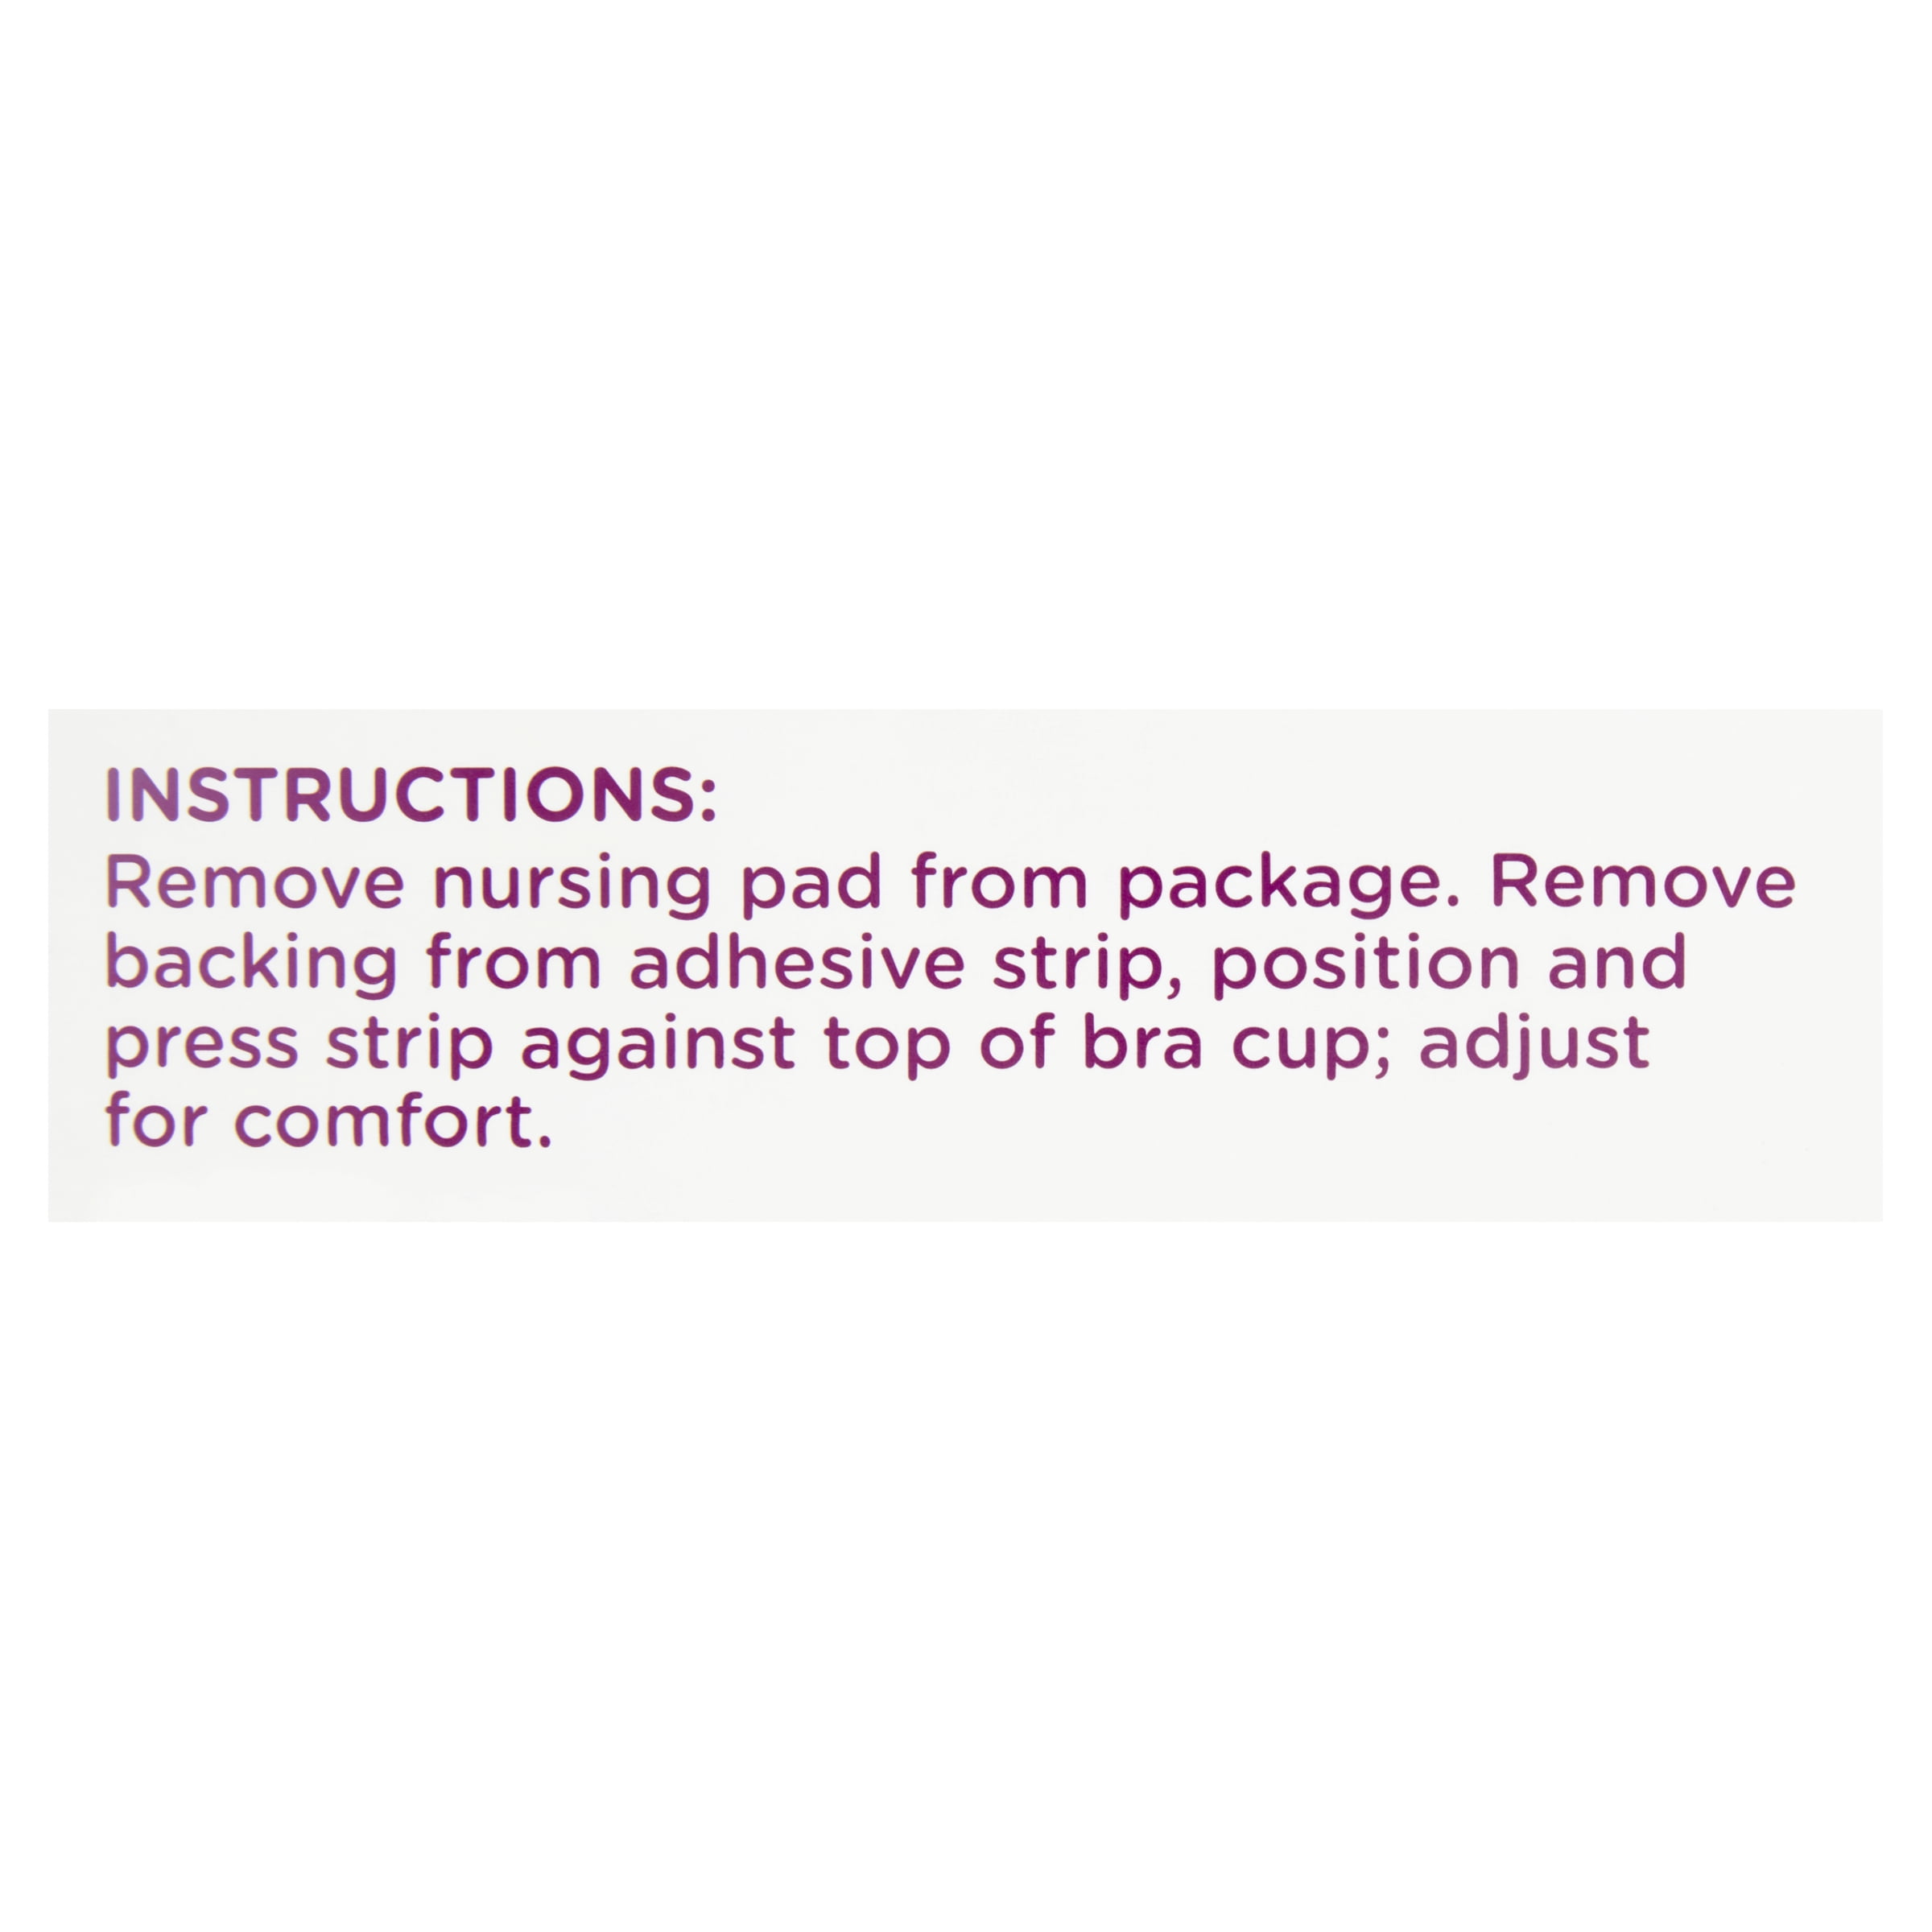 Parents Choice Premium Nursing Pads, 42 Count